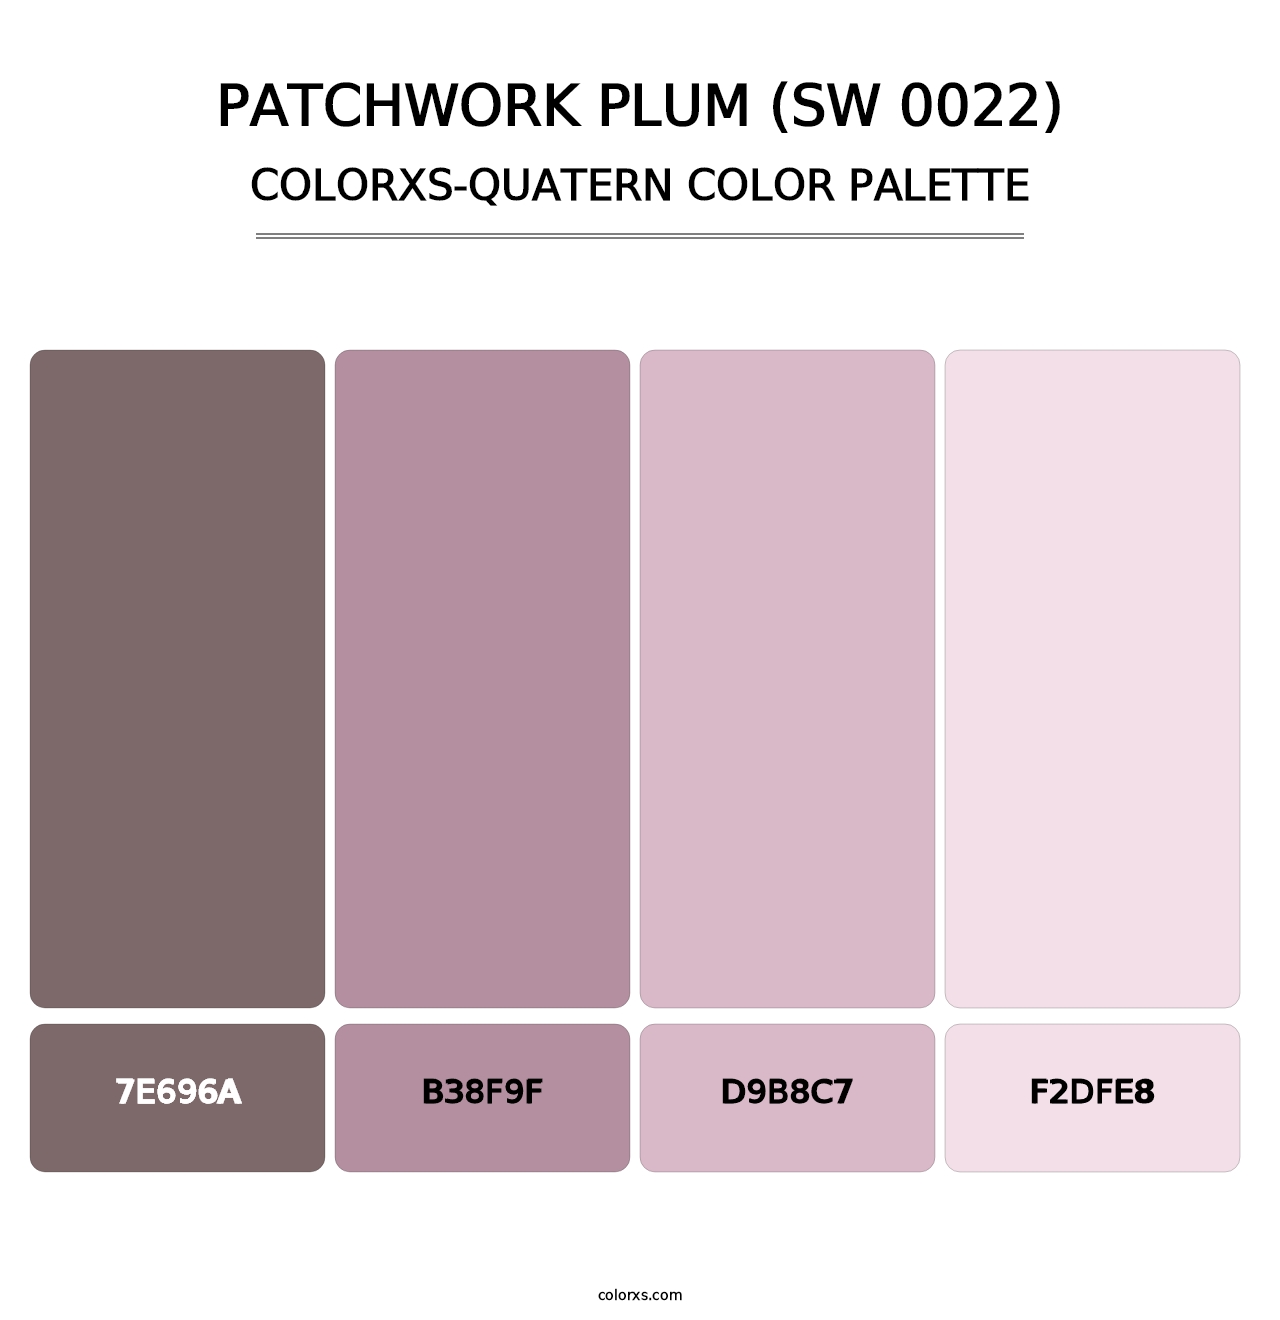 Patchwork Plum (SW 0022) - Colorxs Quatern Palette